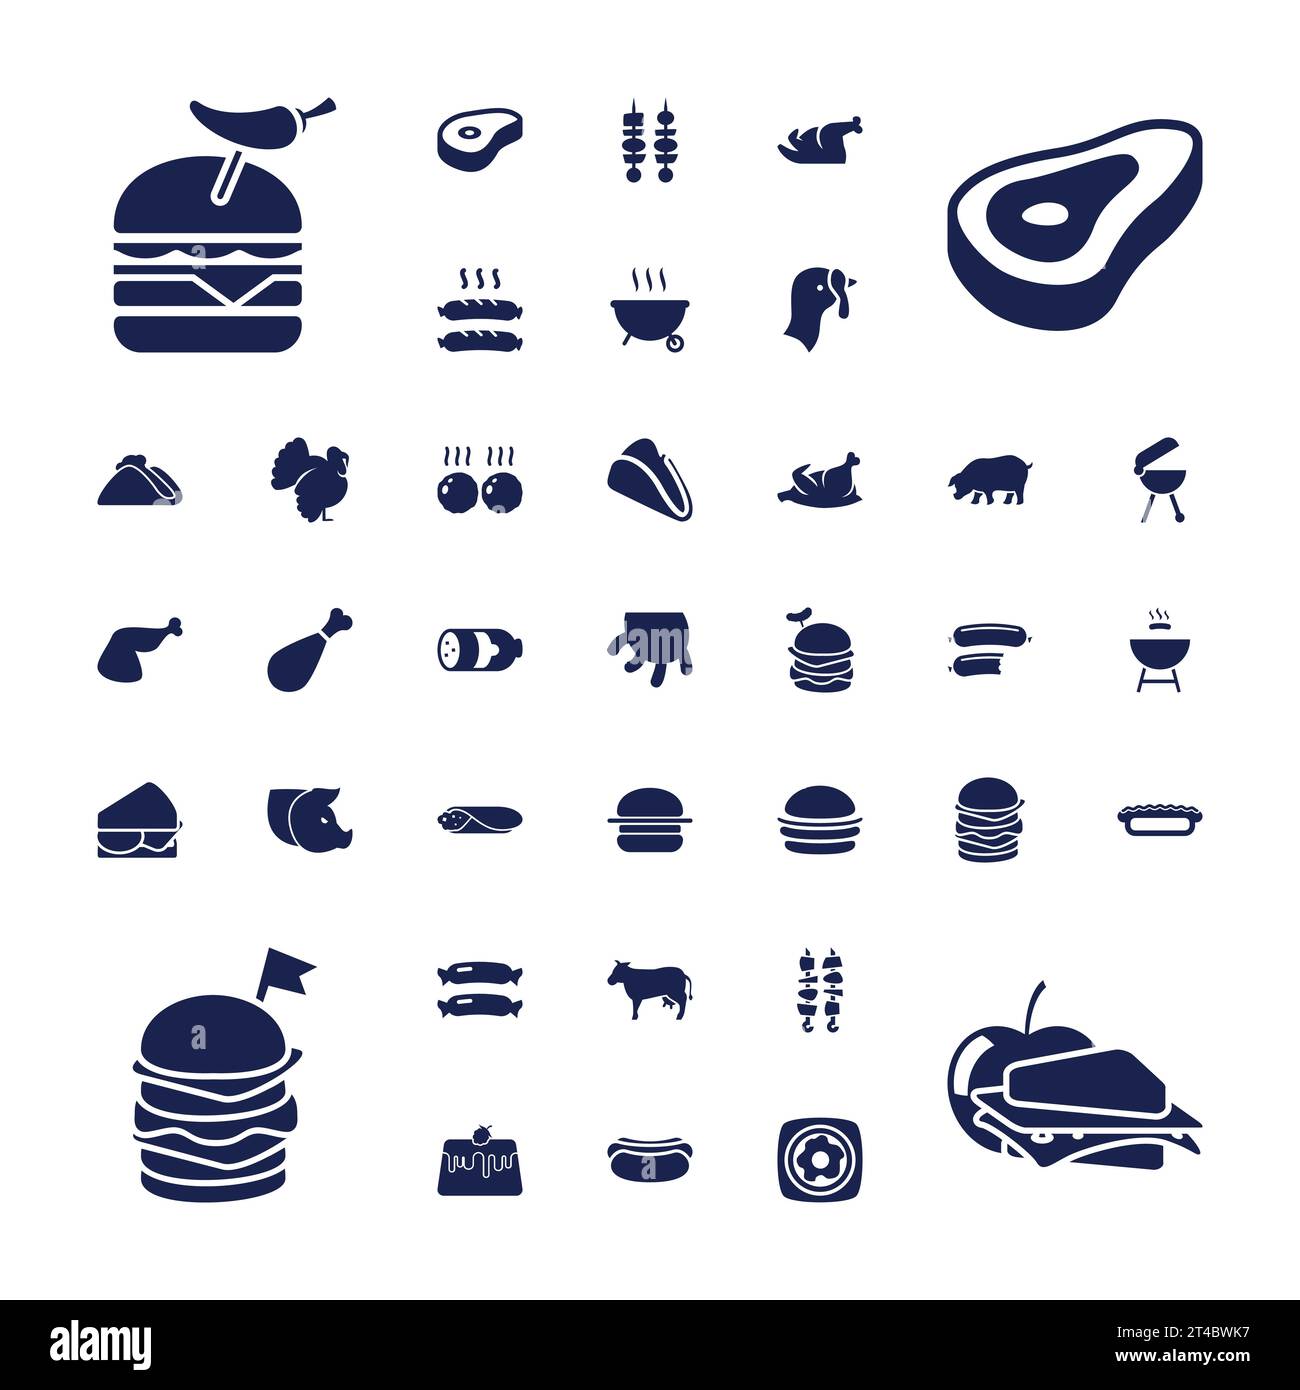 37 Iconos de carne Imagen vectorial libre de regalías Ilustración del Vector